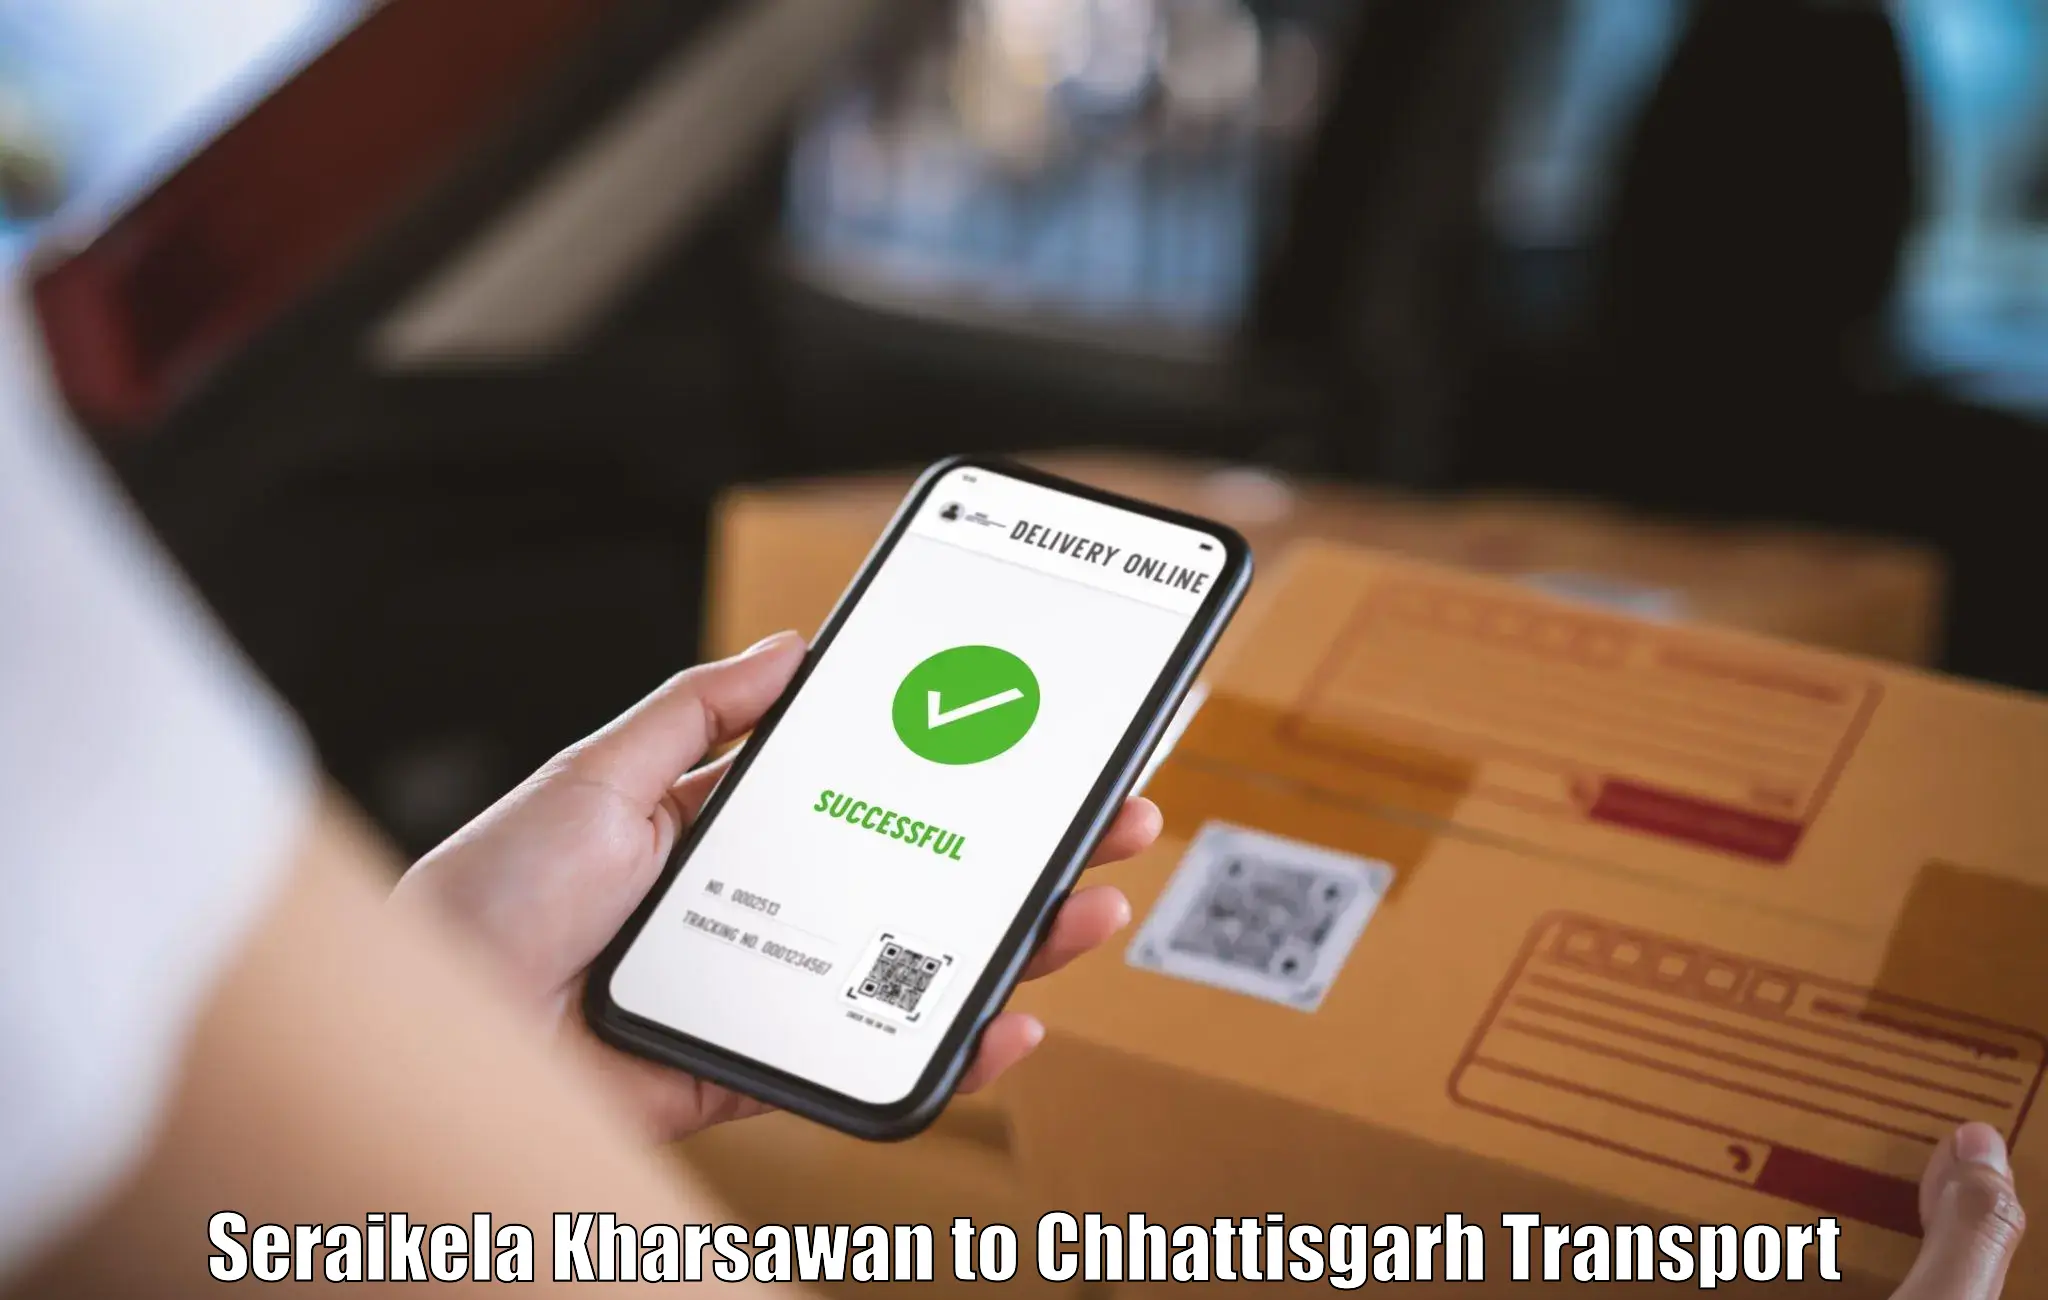 Online transport service Seraikela Kharsawan to Mandhar